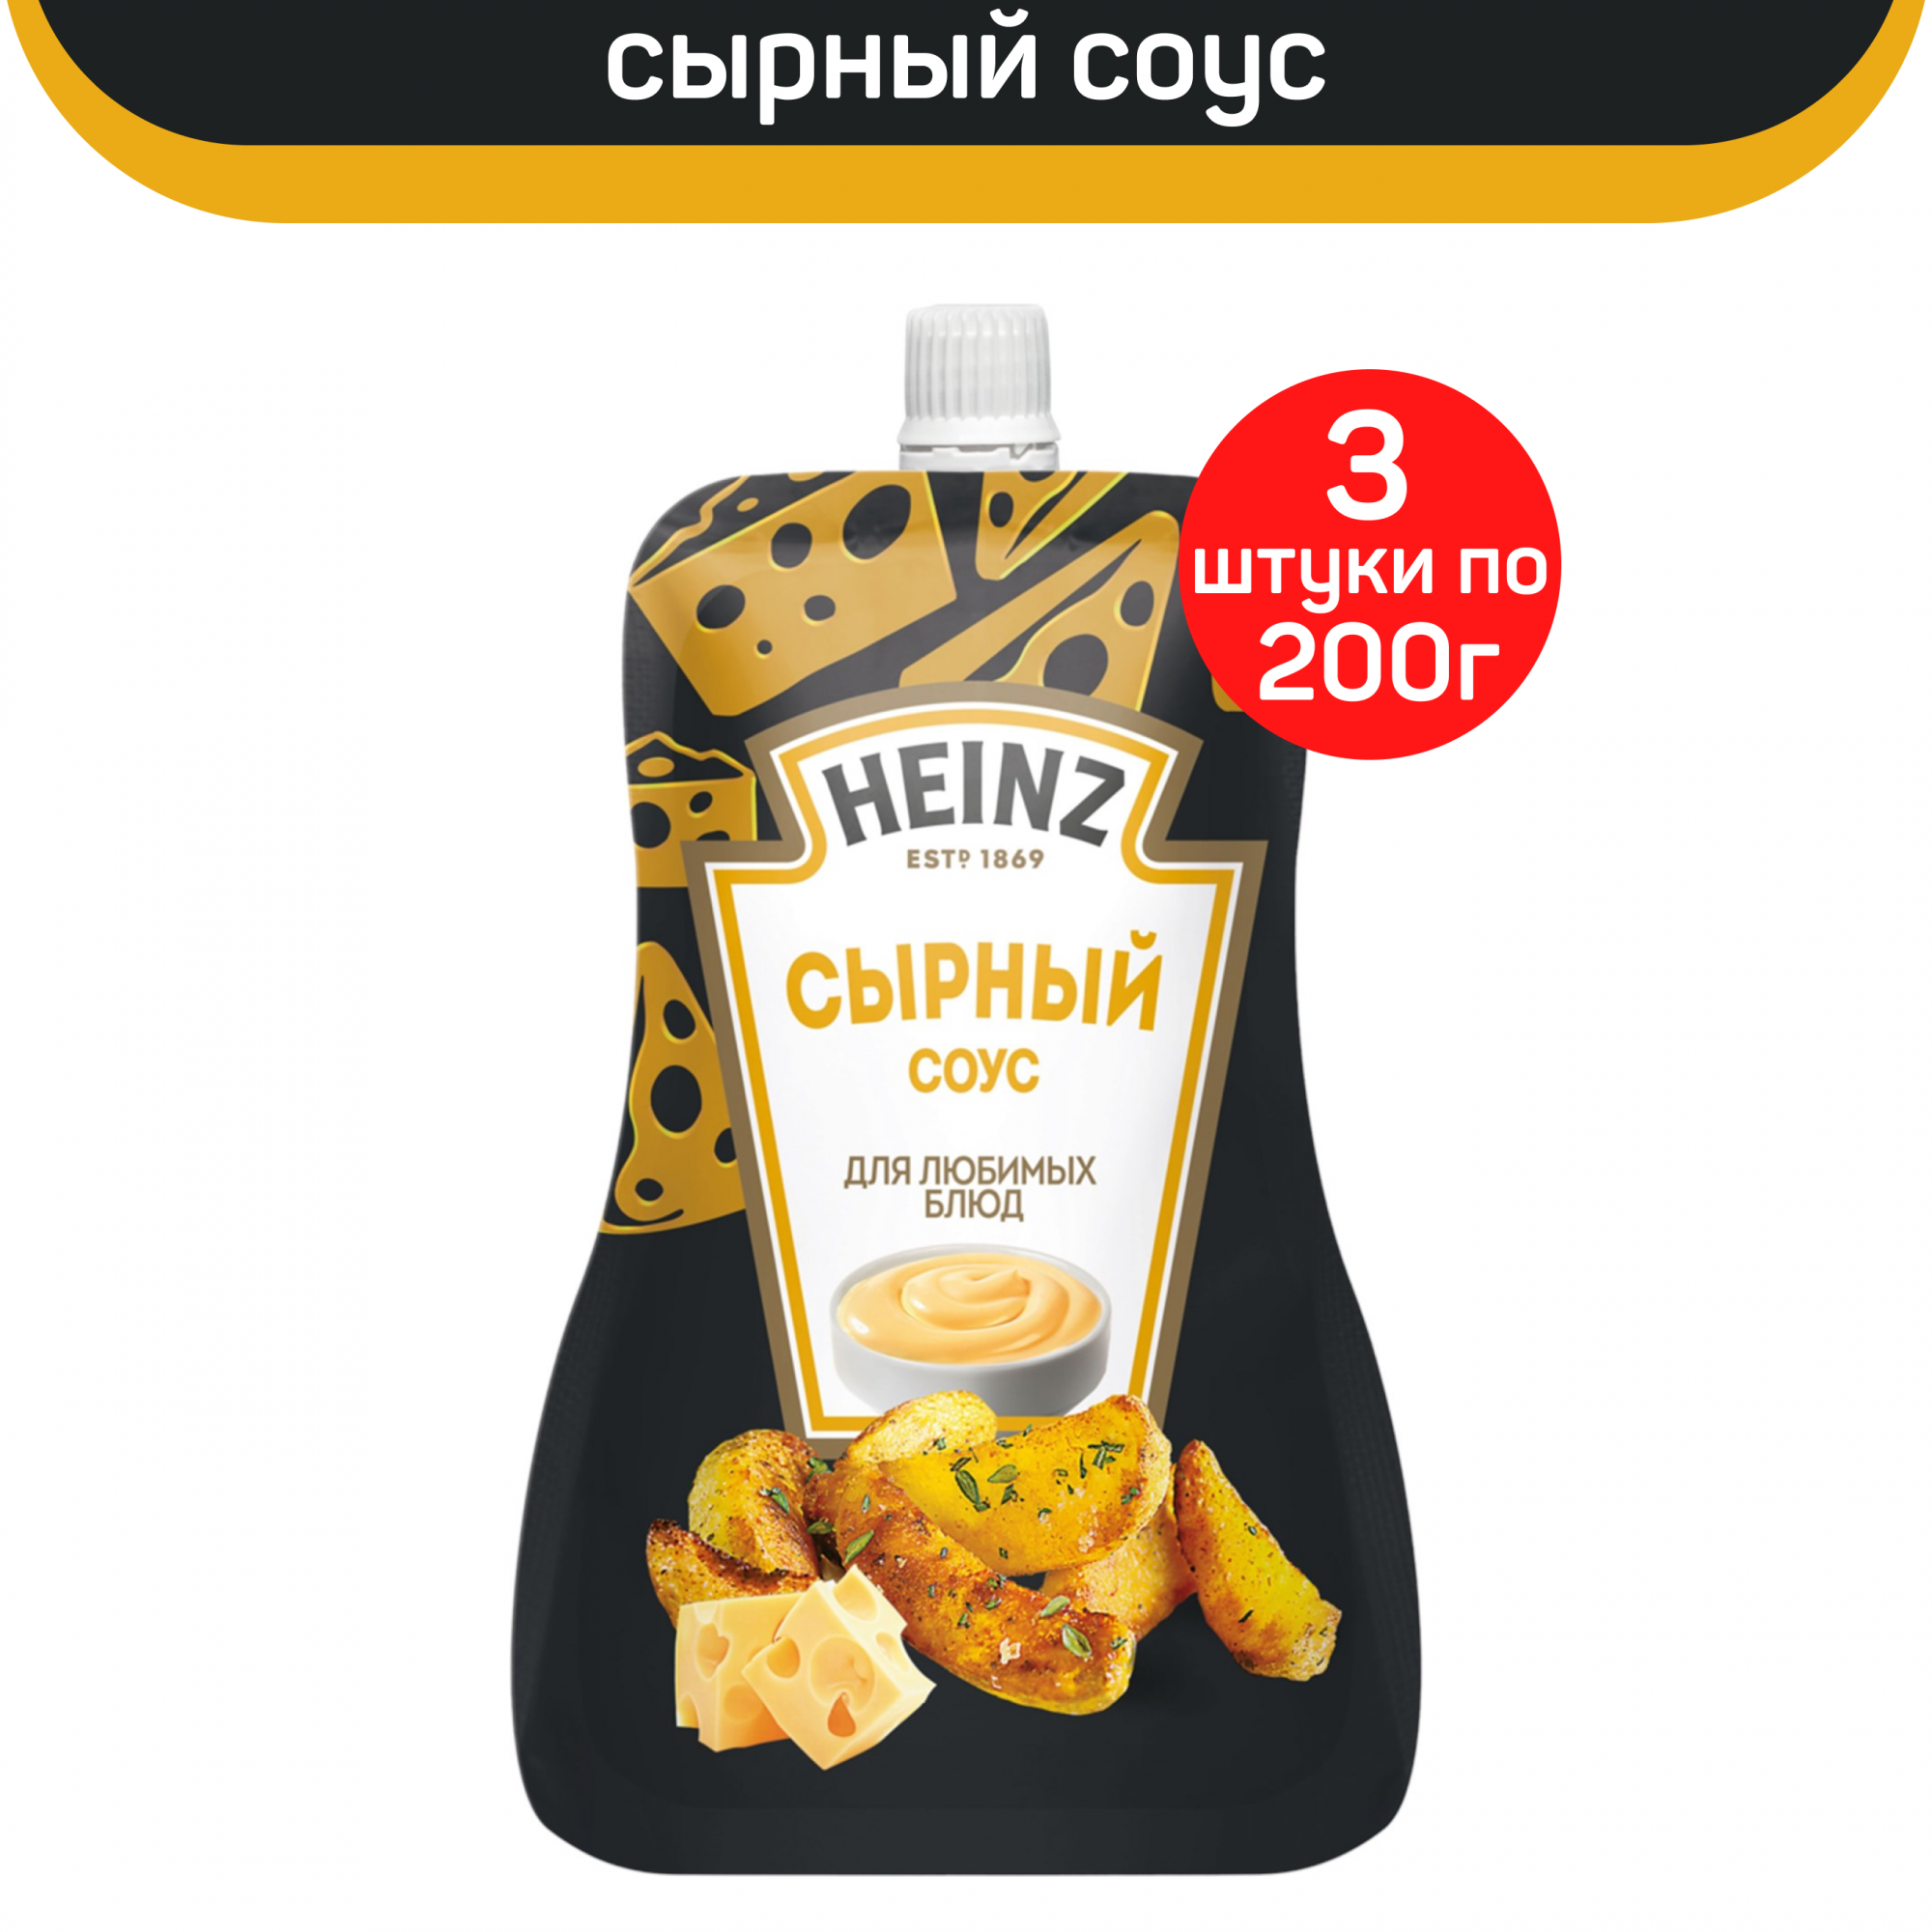 Соус Heinz Сырный, 3 шт по 200 г - купить в ProdMIX, цена на Мегамаркет